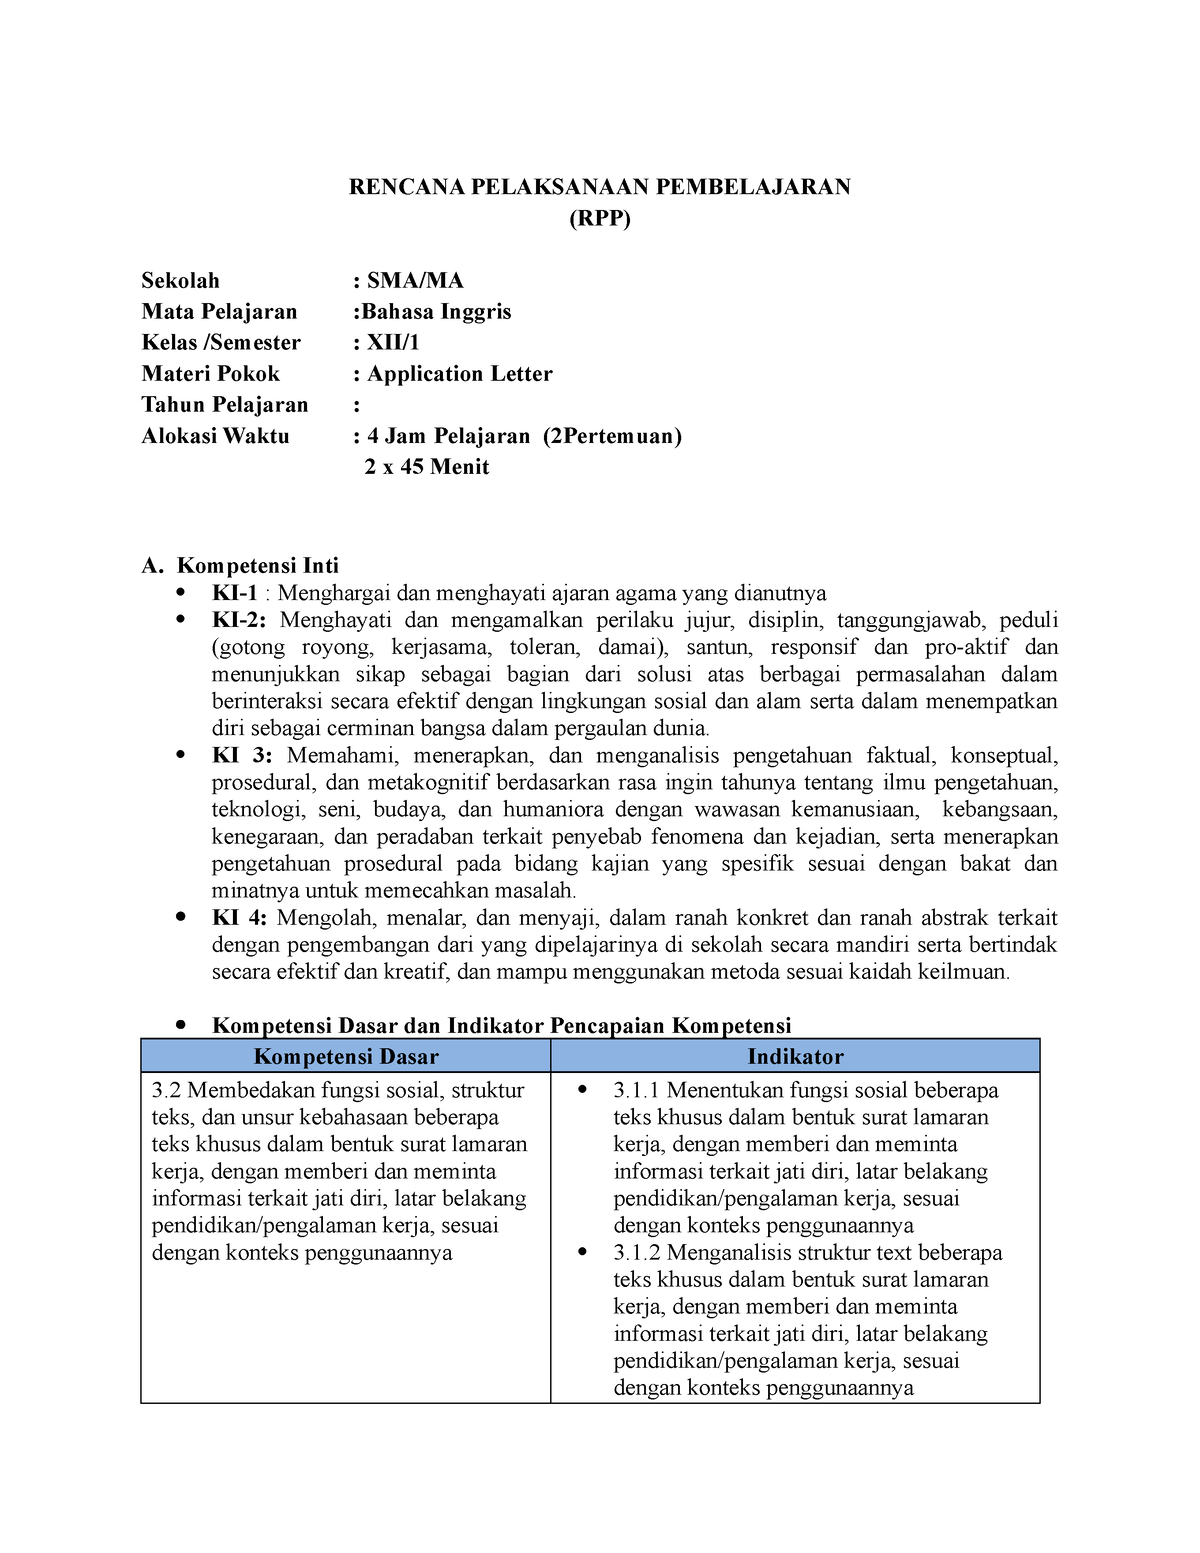 rpp job application letter kelas 12